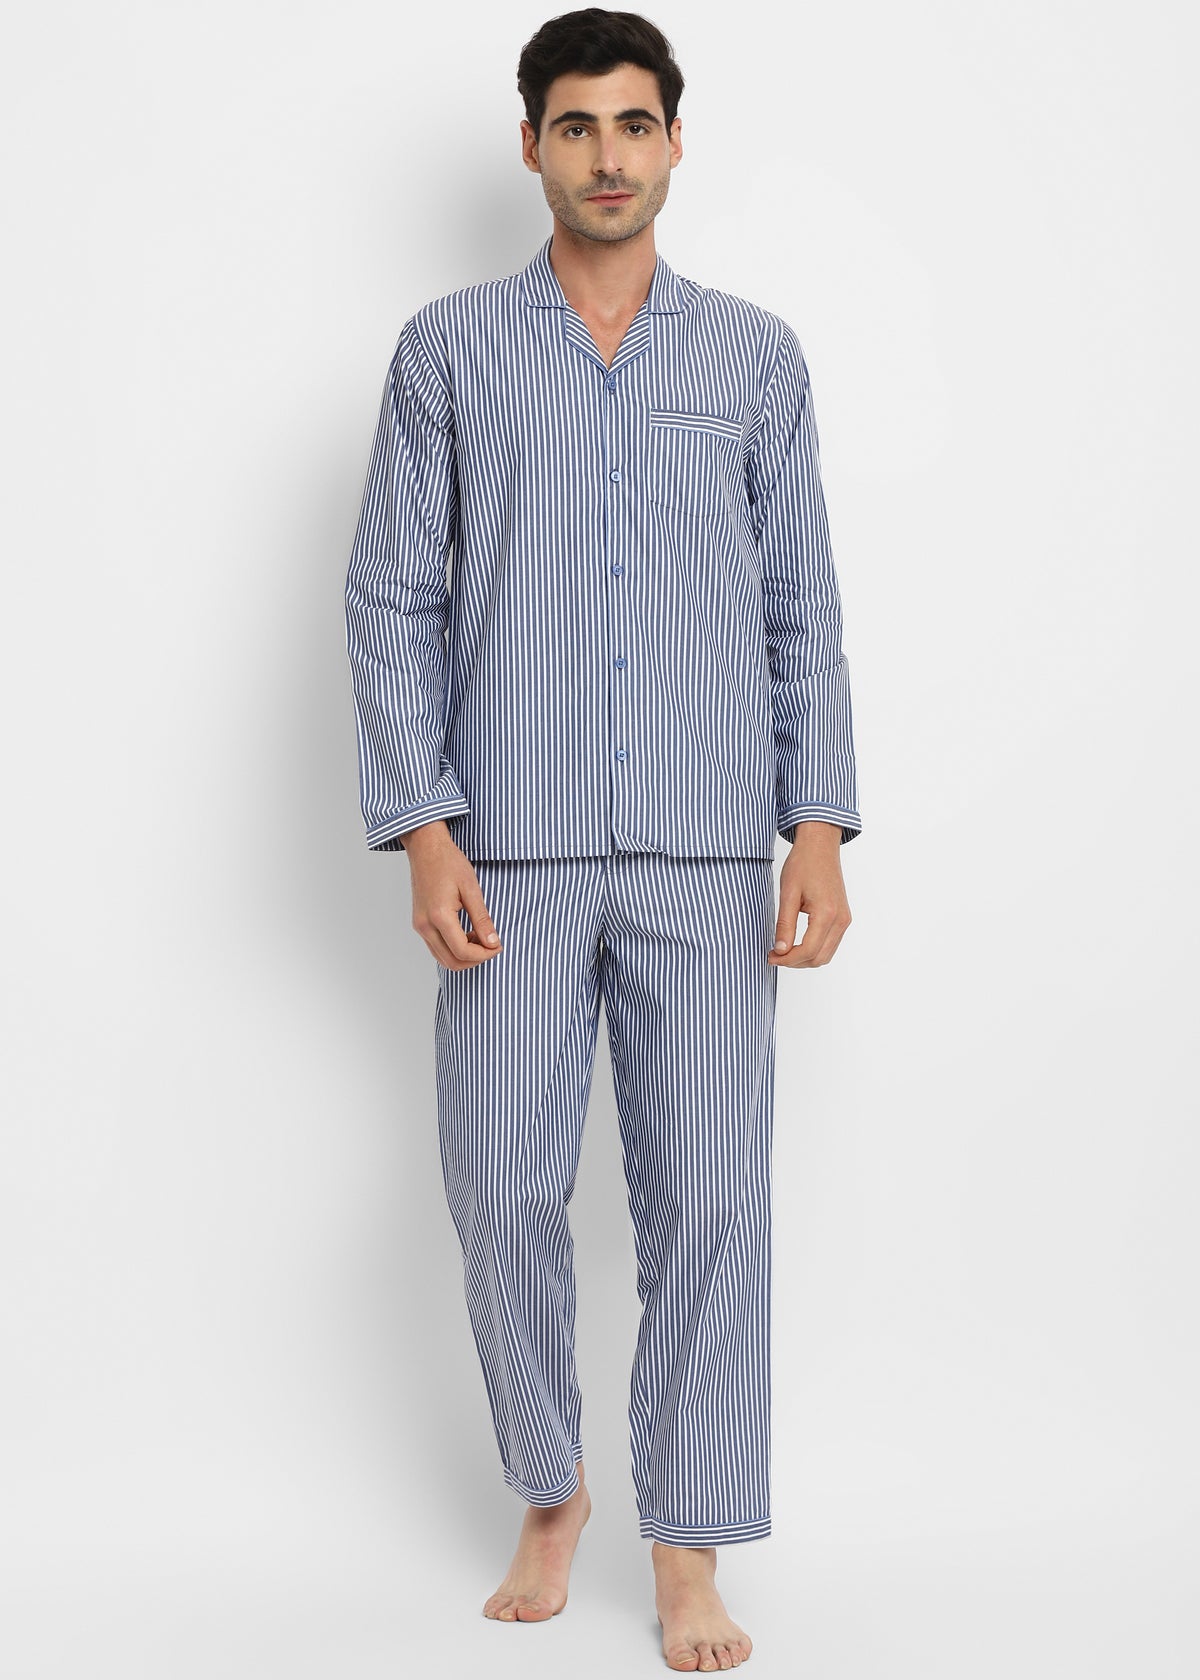 Strips Blue Cotton Men's Night Suit - Shopbloom